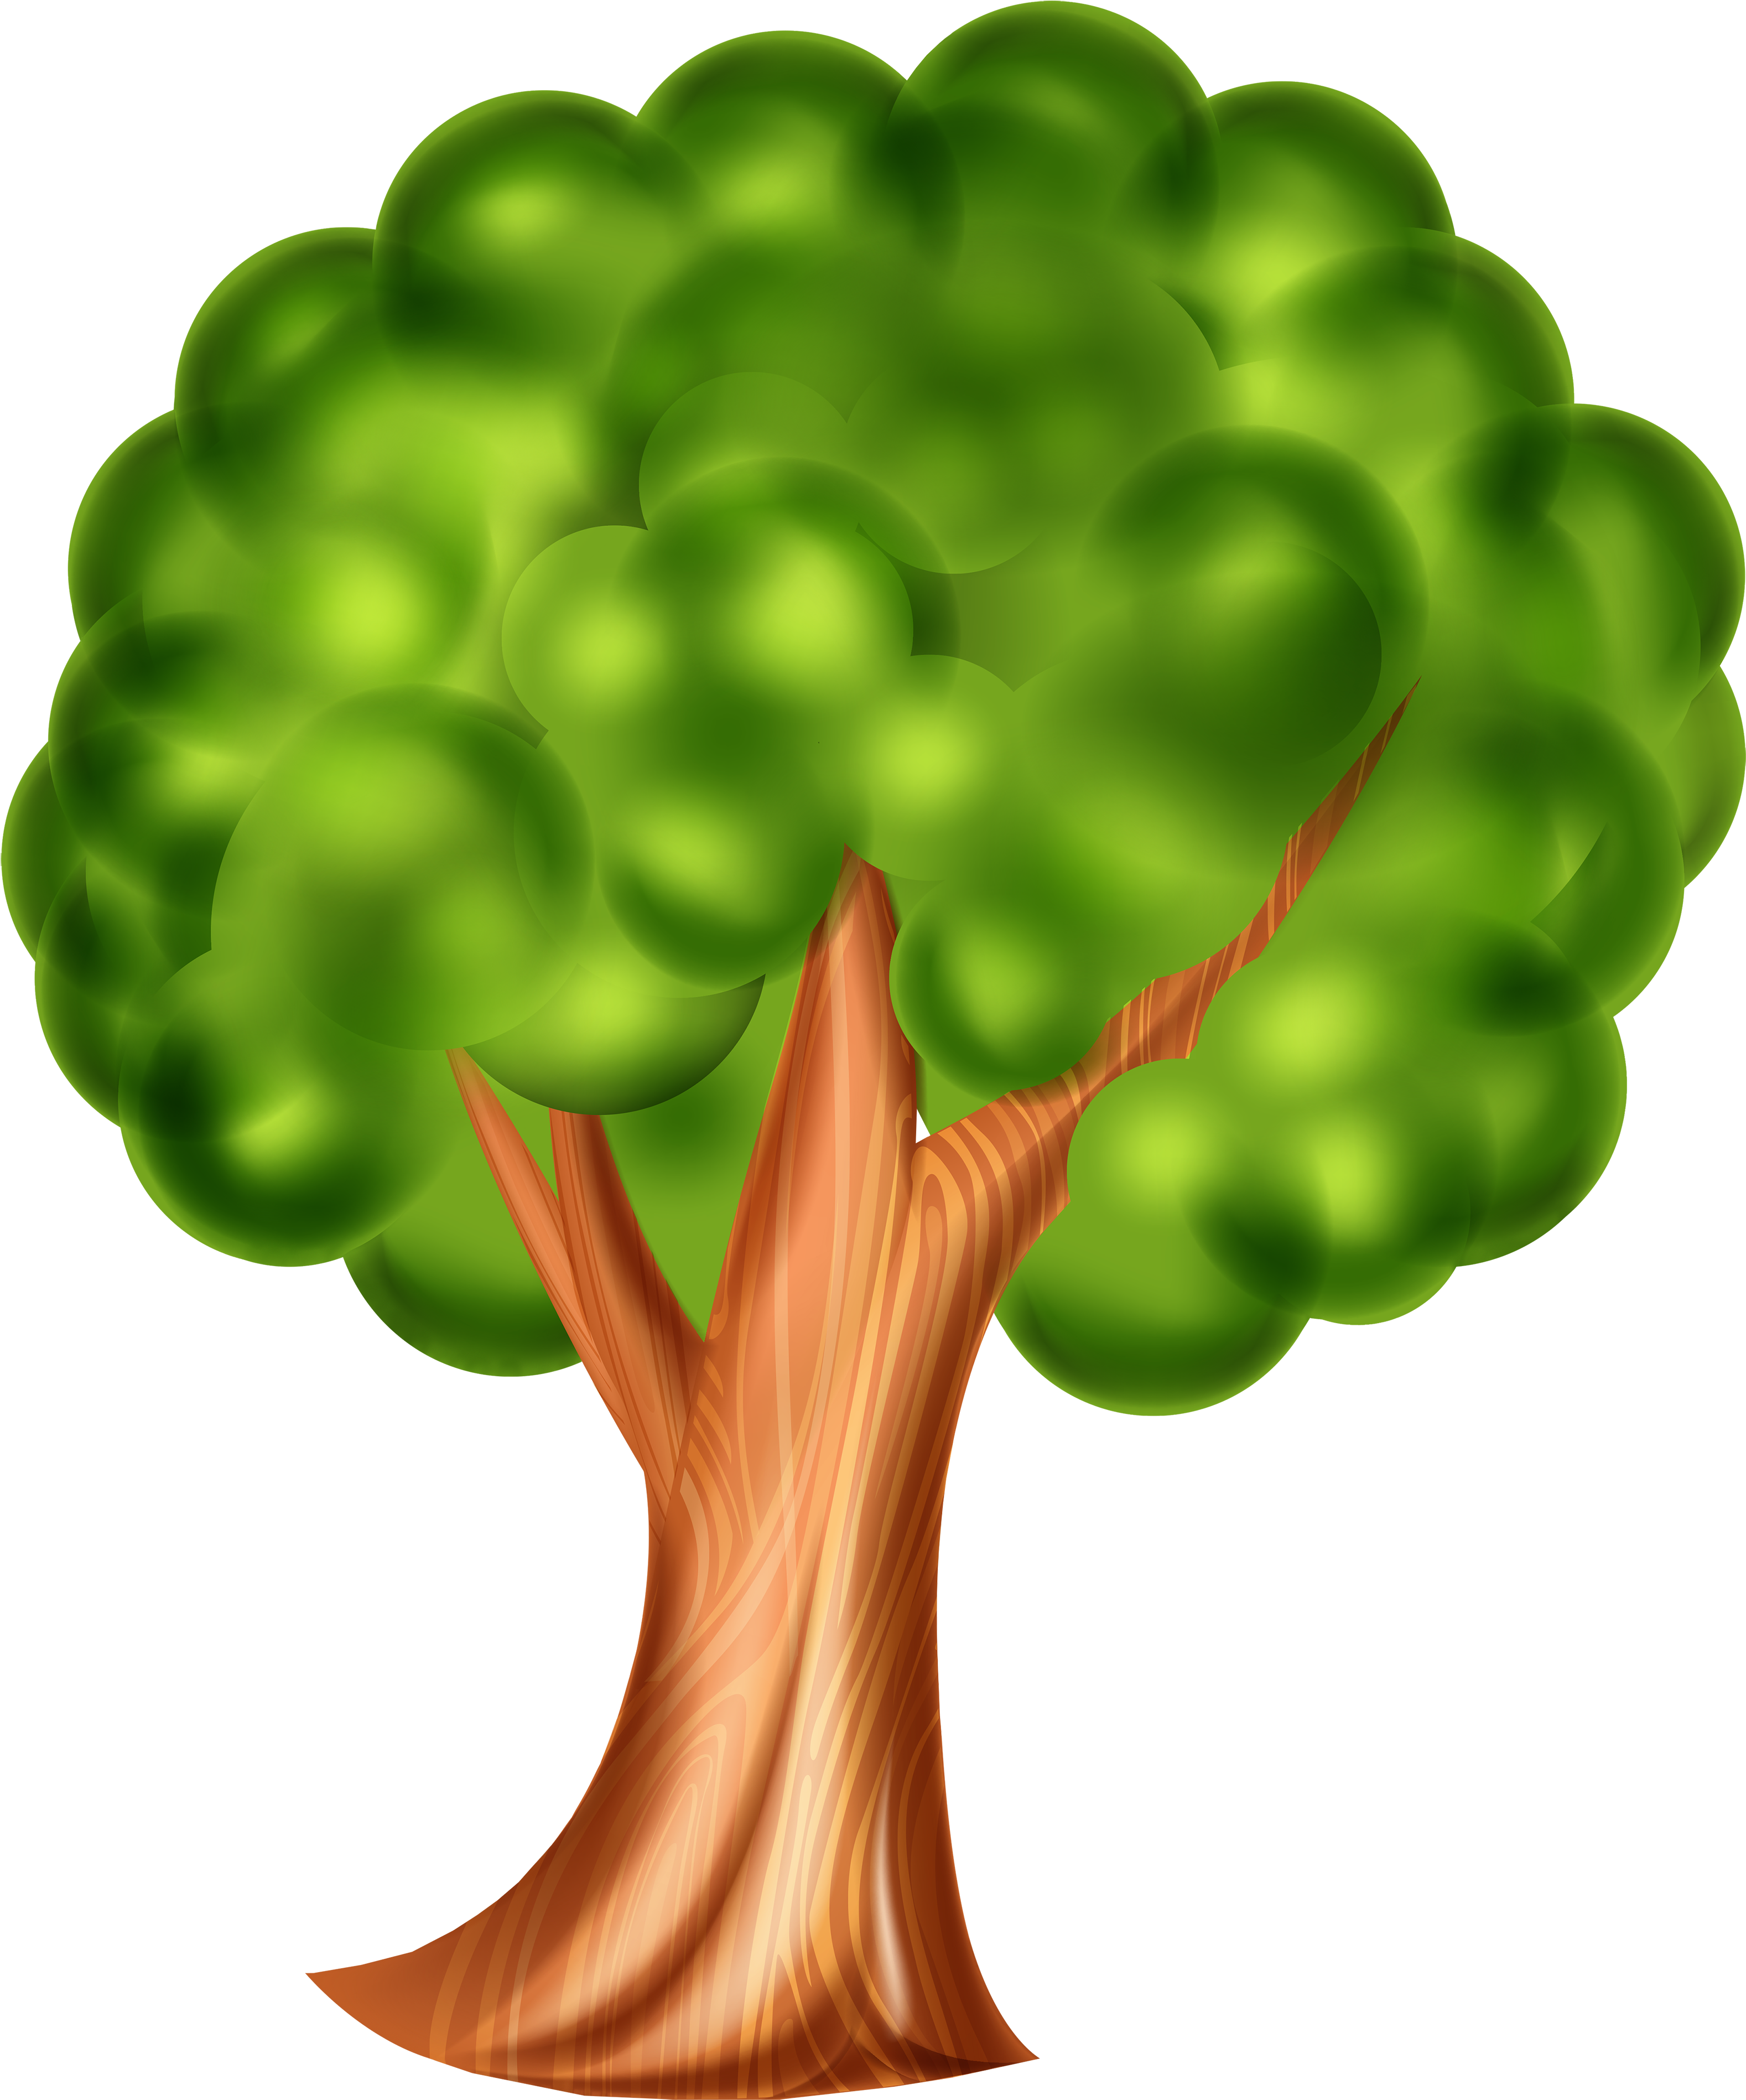 Tree Png Clip Art